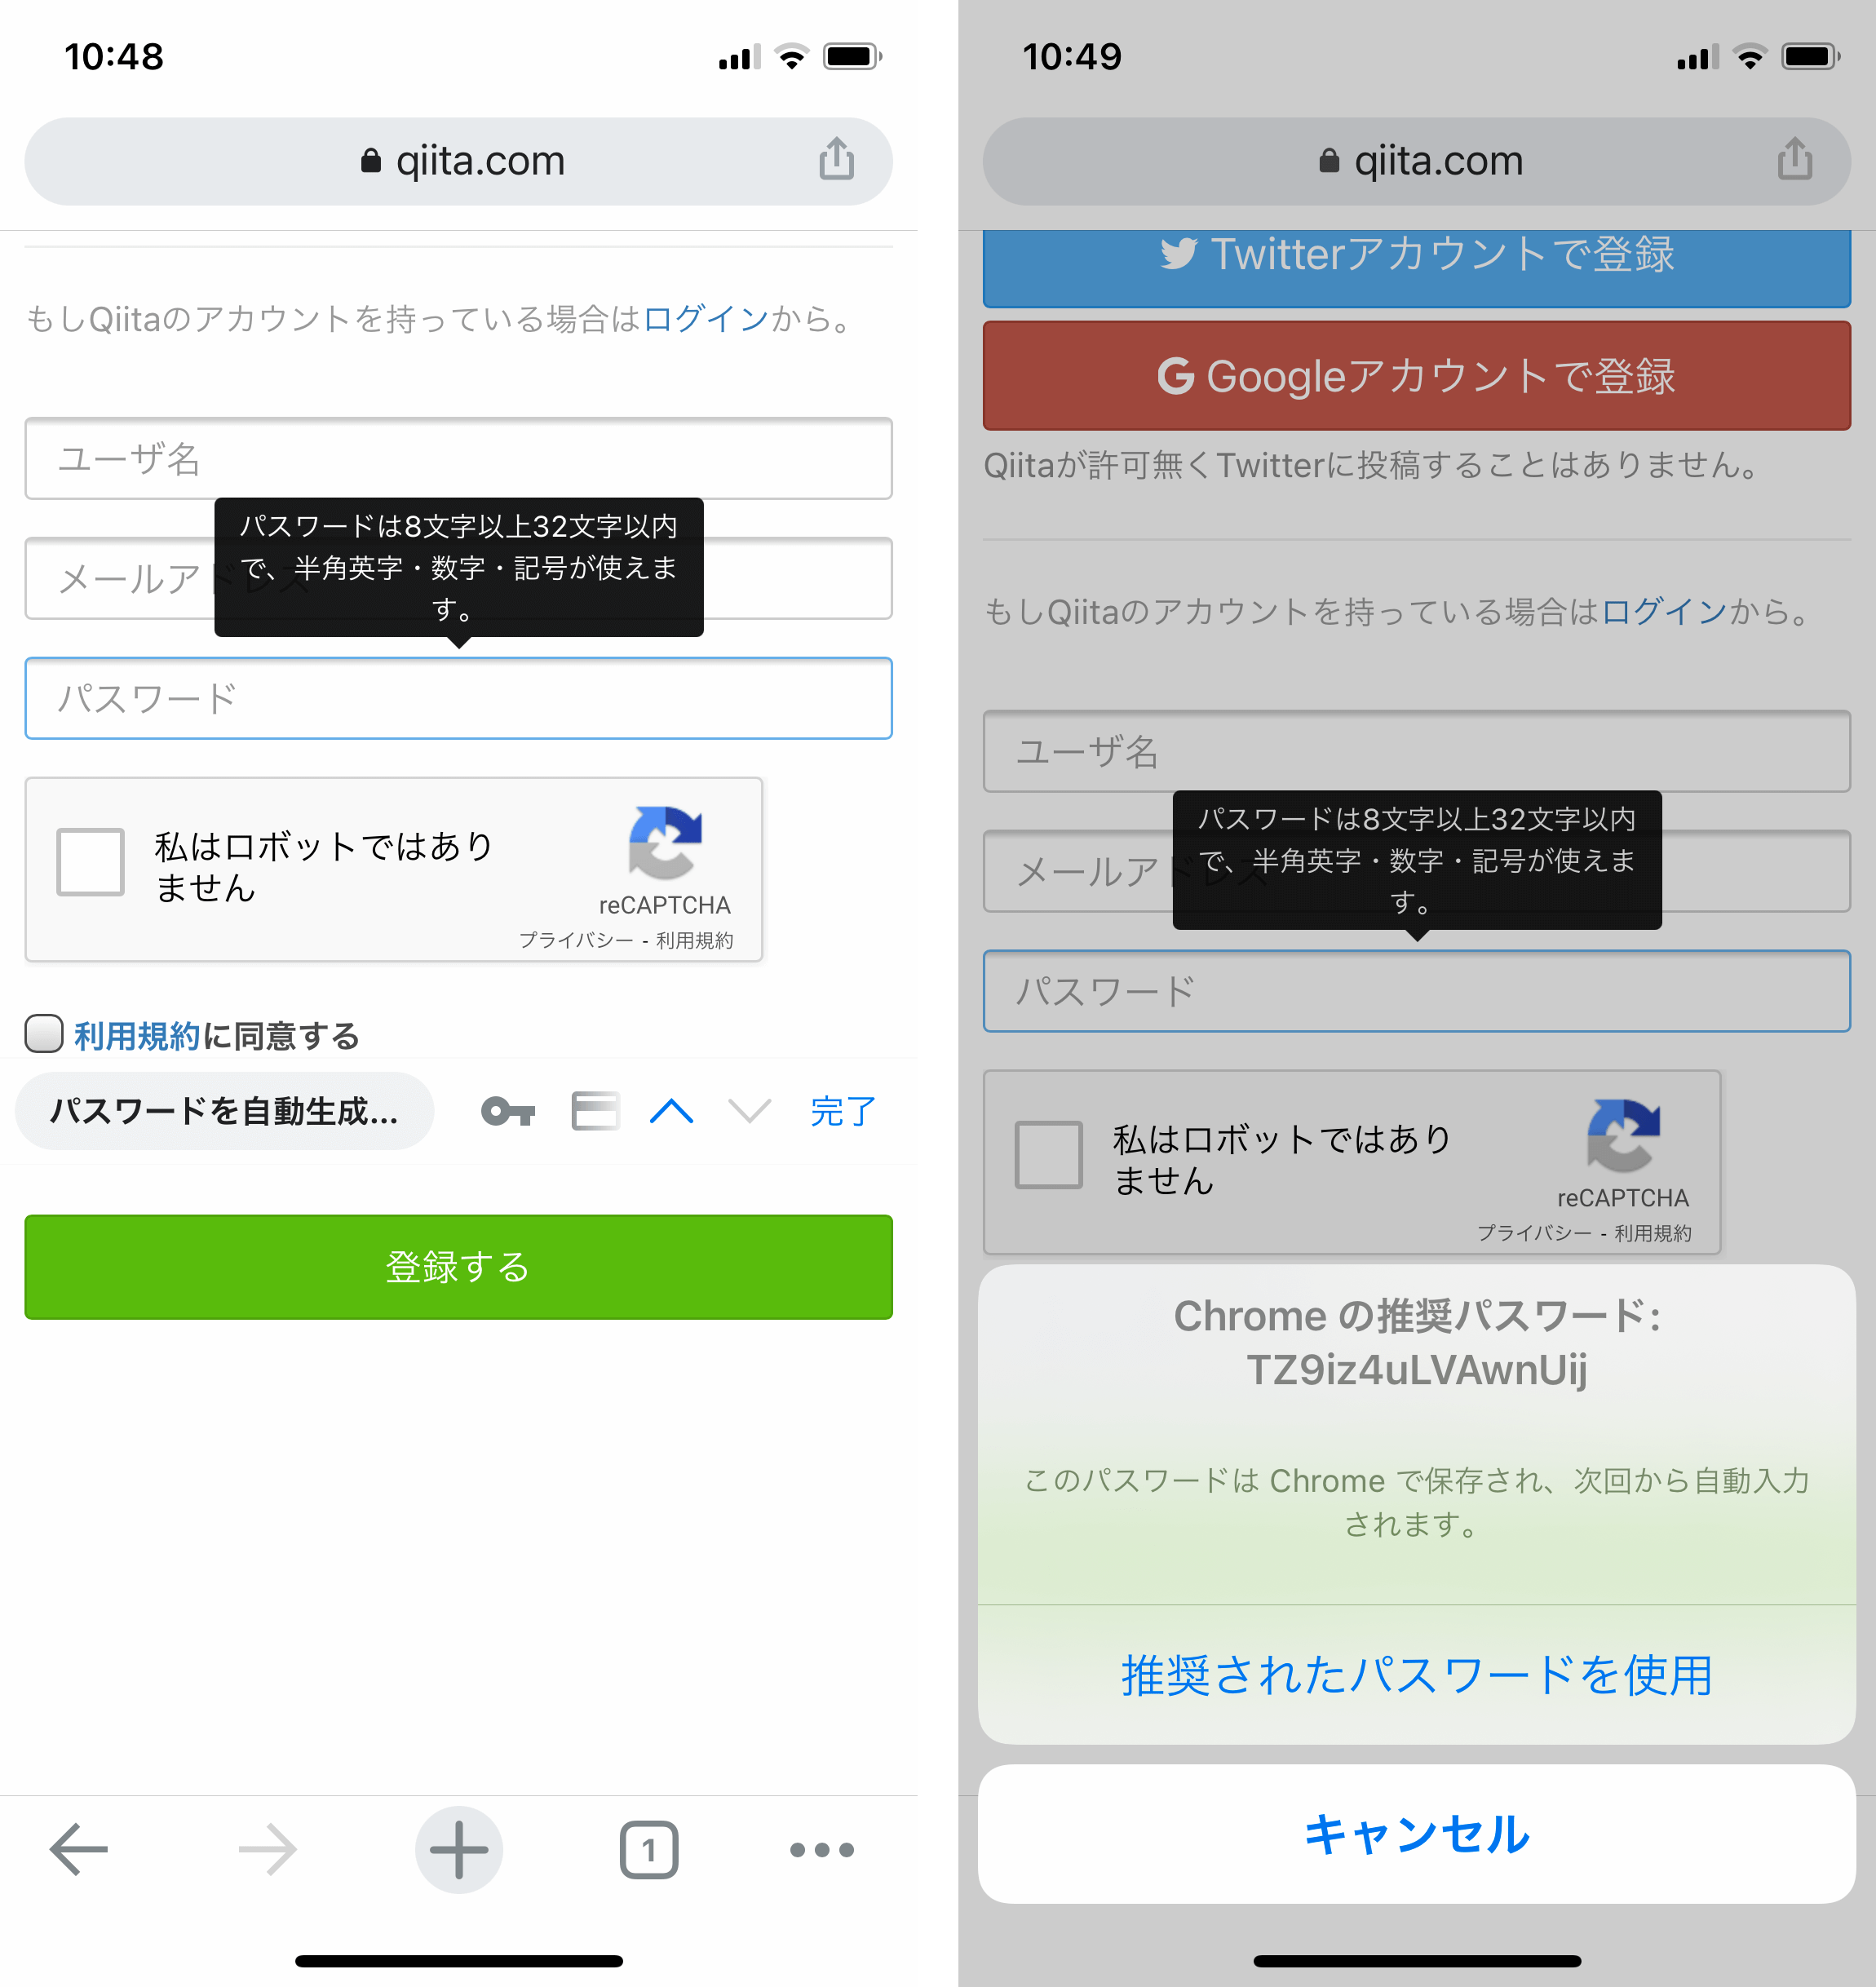 iOS 版 Chrome で新しいパスワードを自動生成している例（画面左：新規アカウント登録画面でパスワード入力欄にフォーカスした状態 / 画面右：Chrome から推奨パスワードが提示された例）